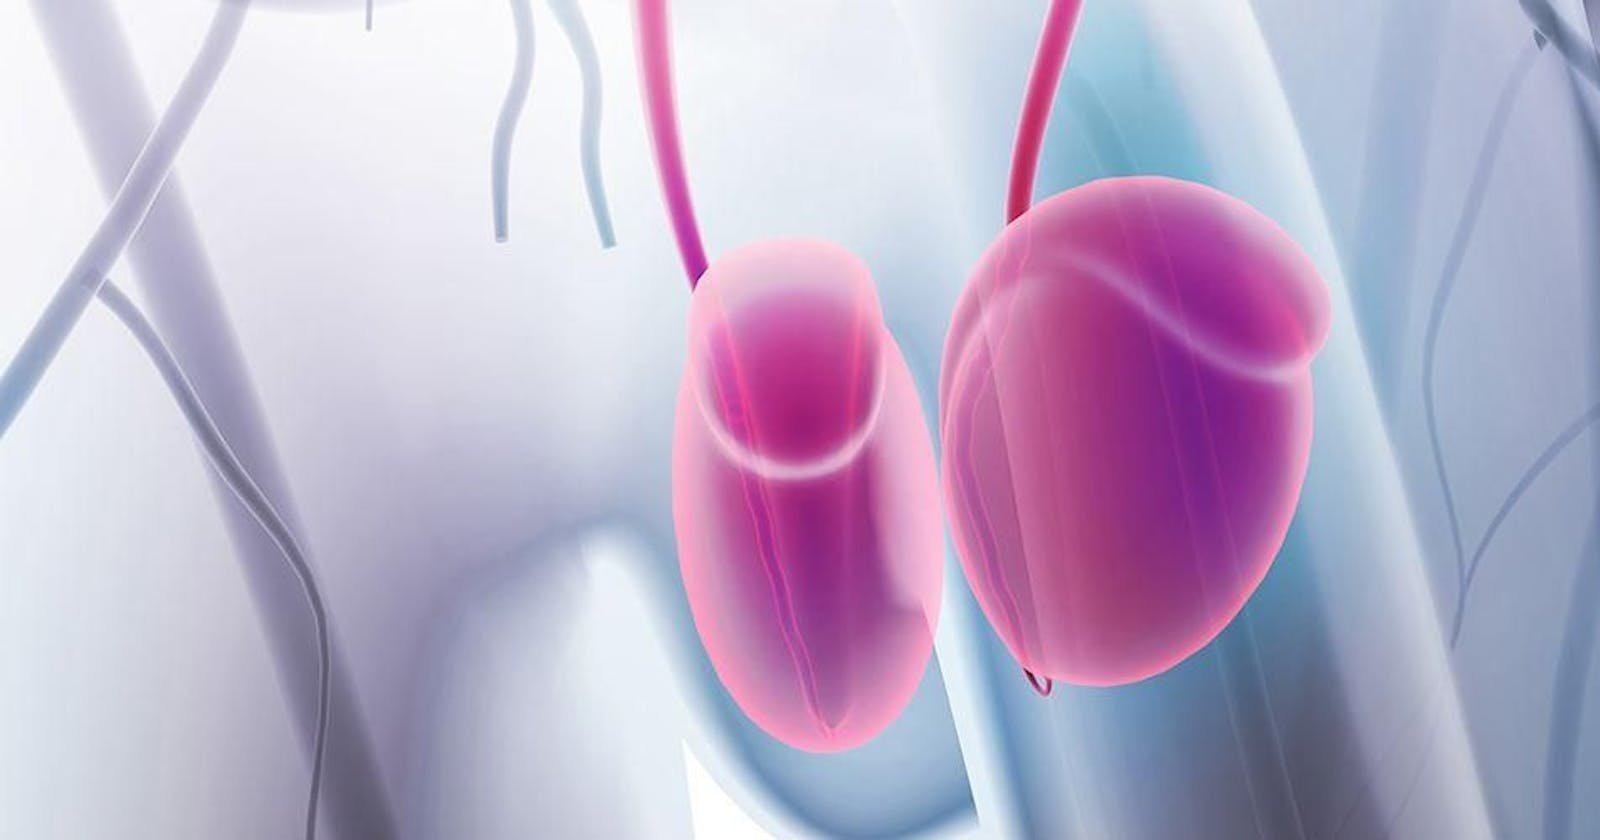 Terjadi Peradangan Pada Saluran Sperma? Hati-Hati Bisa Terkena Epididimitis Loh